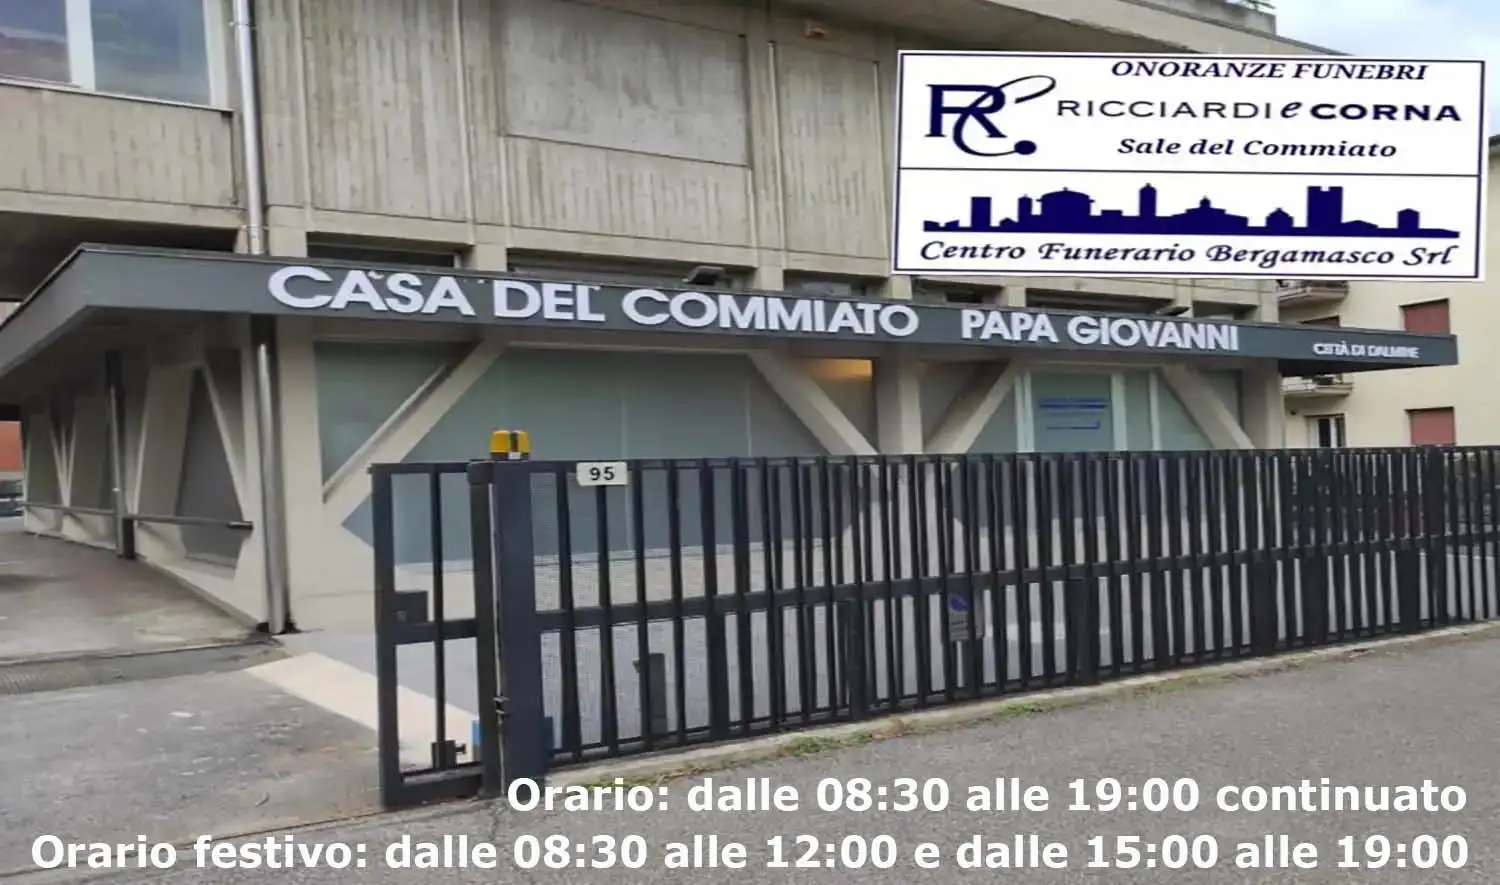 Dalmine (BG) - Ricciardi & Corna "Papa Giovanni" Casa del Commiato